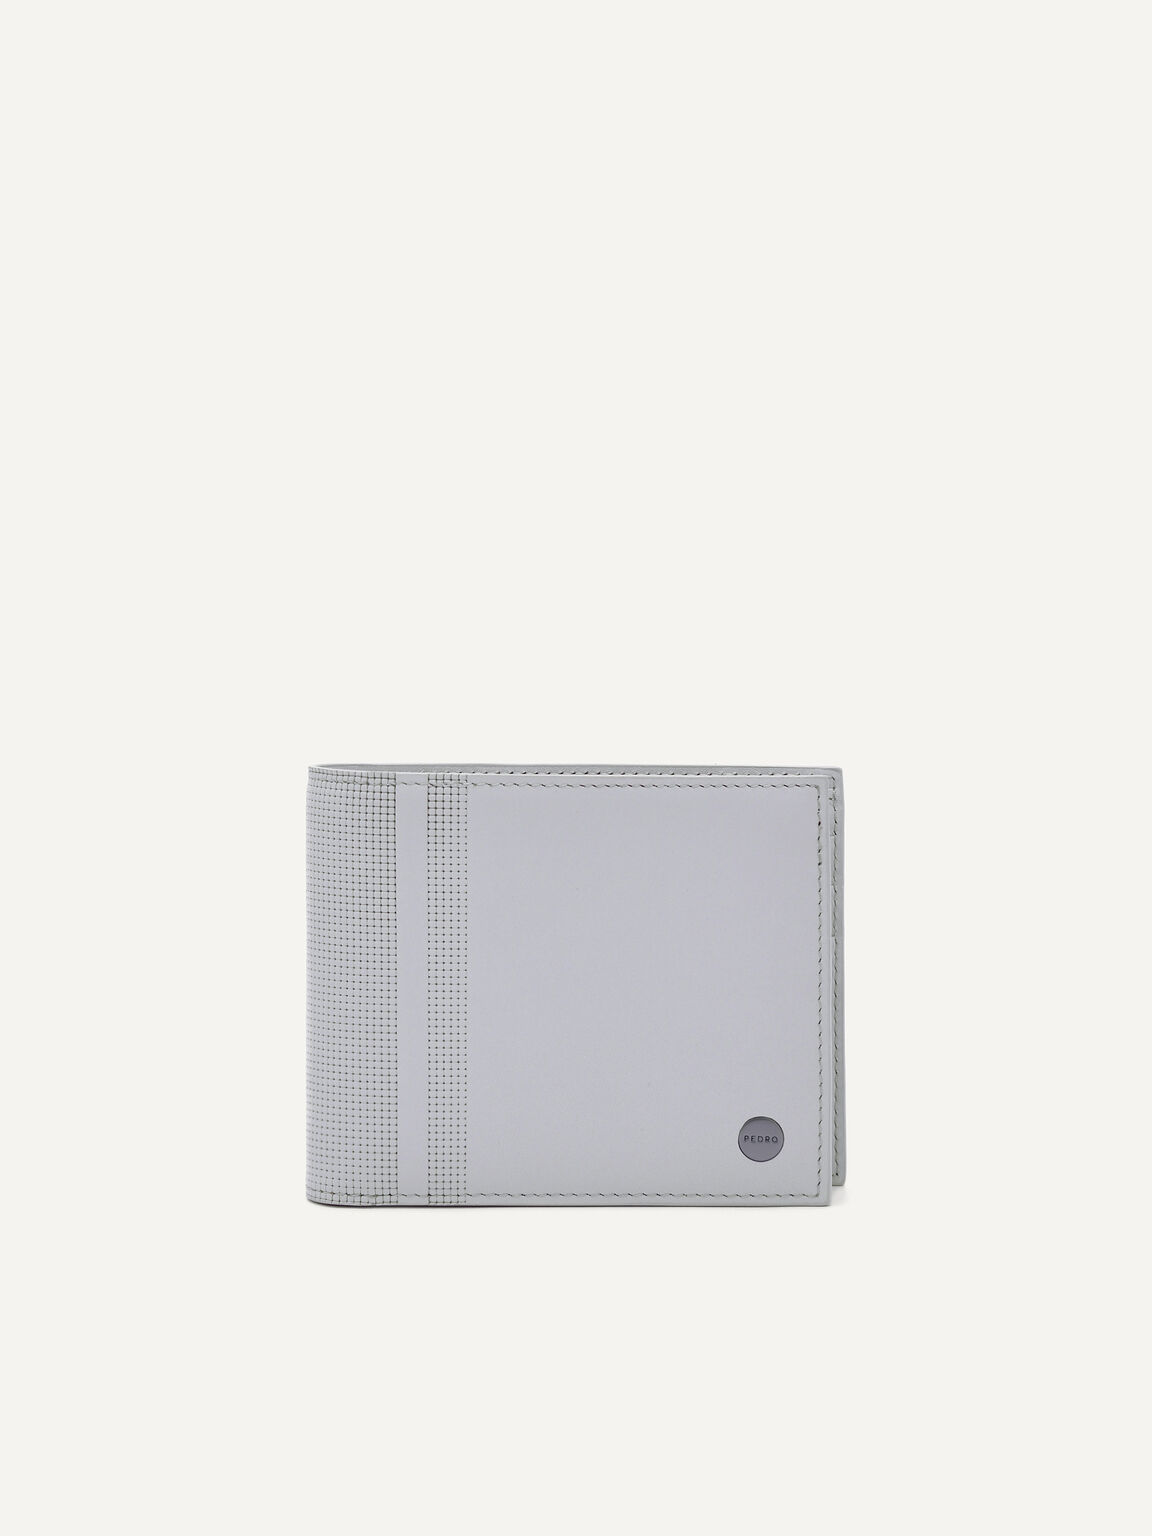 Oliver皮革雙折疊錢包配貼袋, 浅灰色